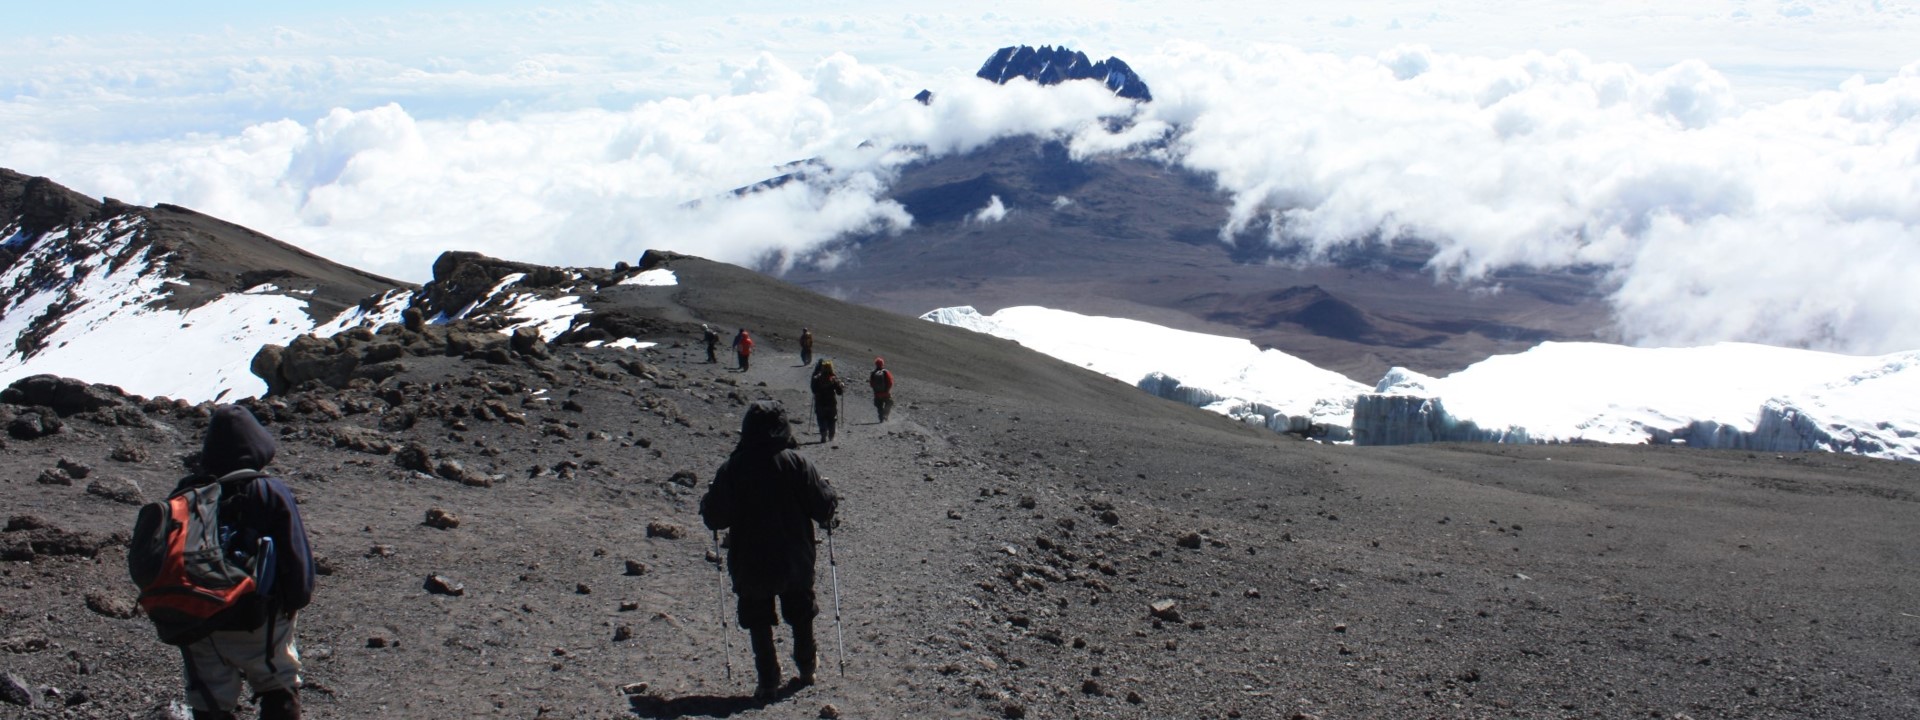 Rongai Route, Mount Kilimanjaro